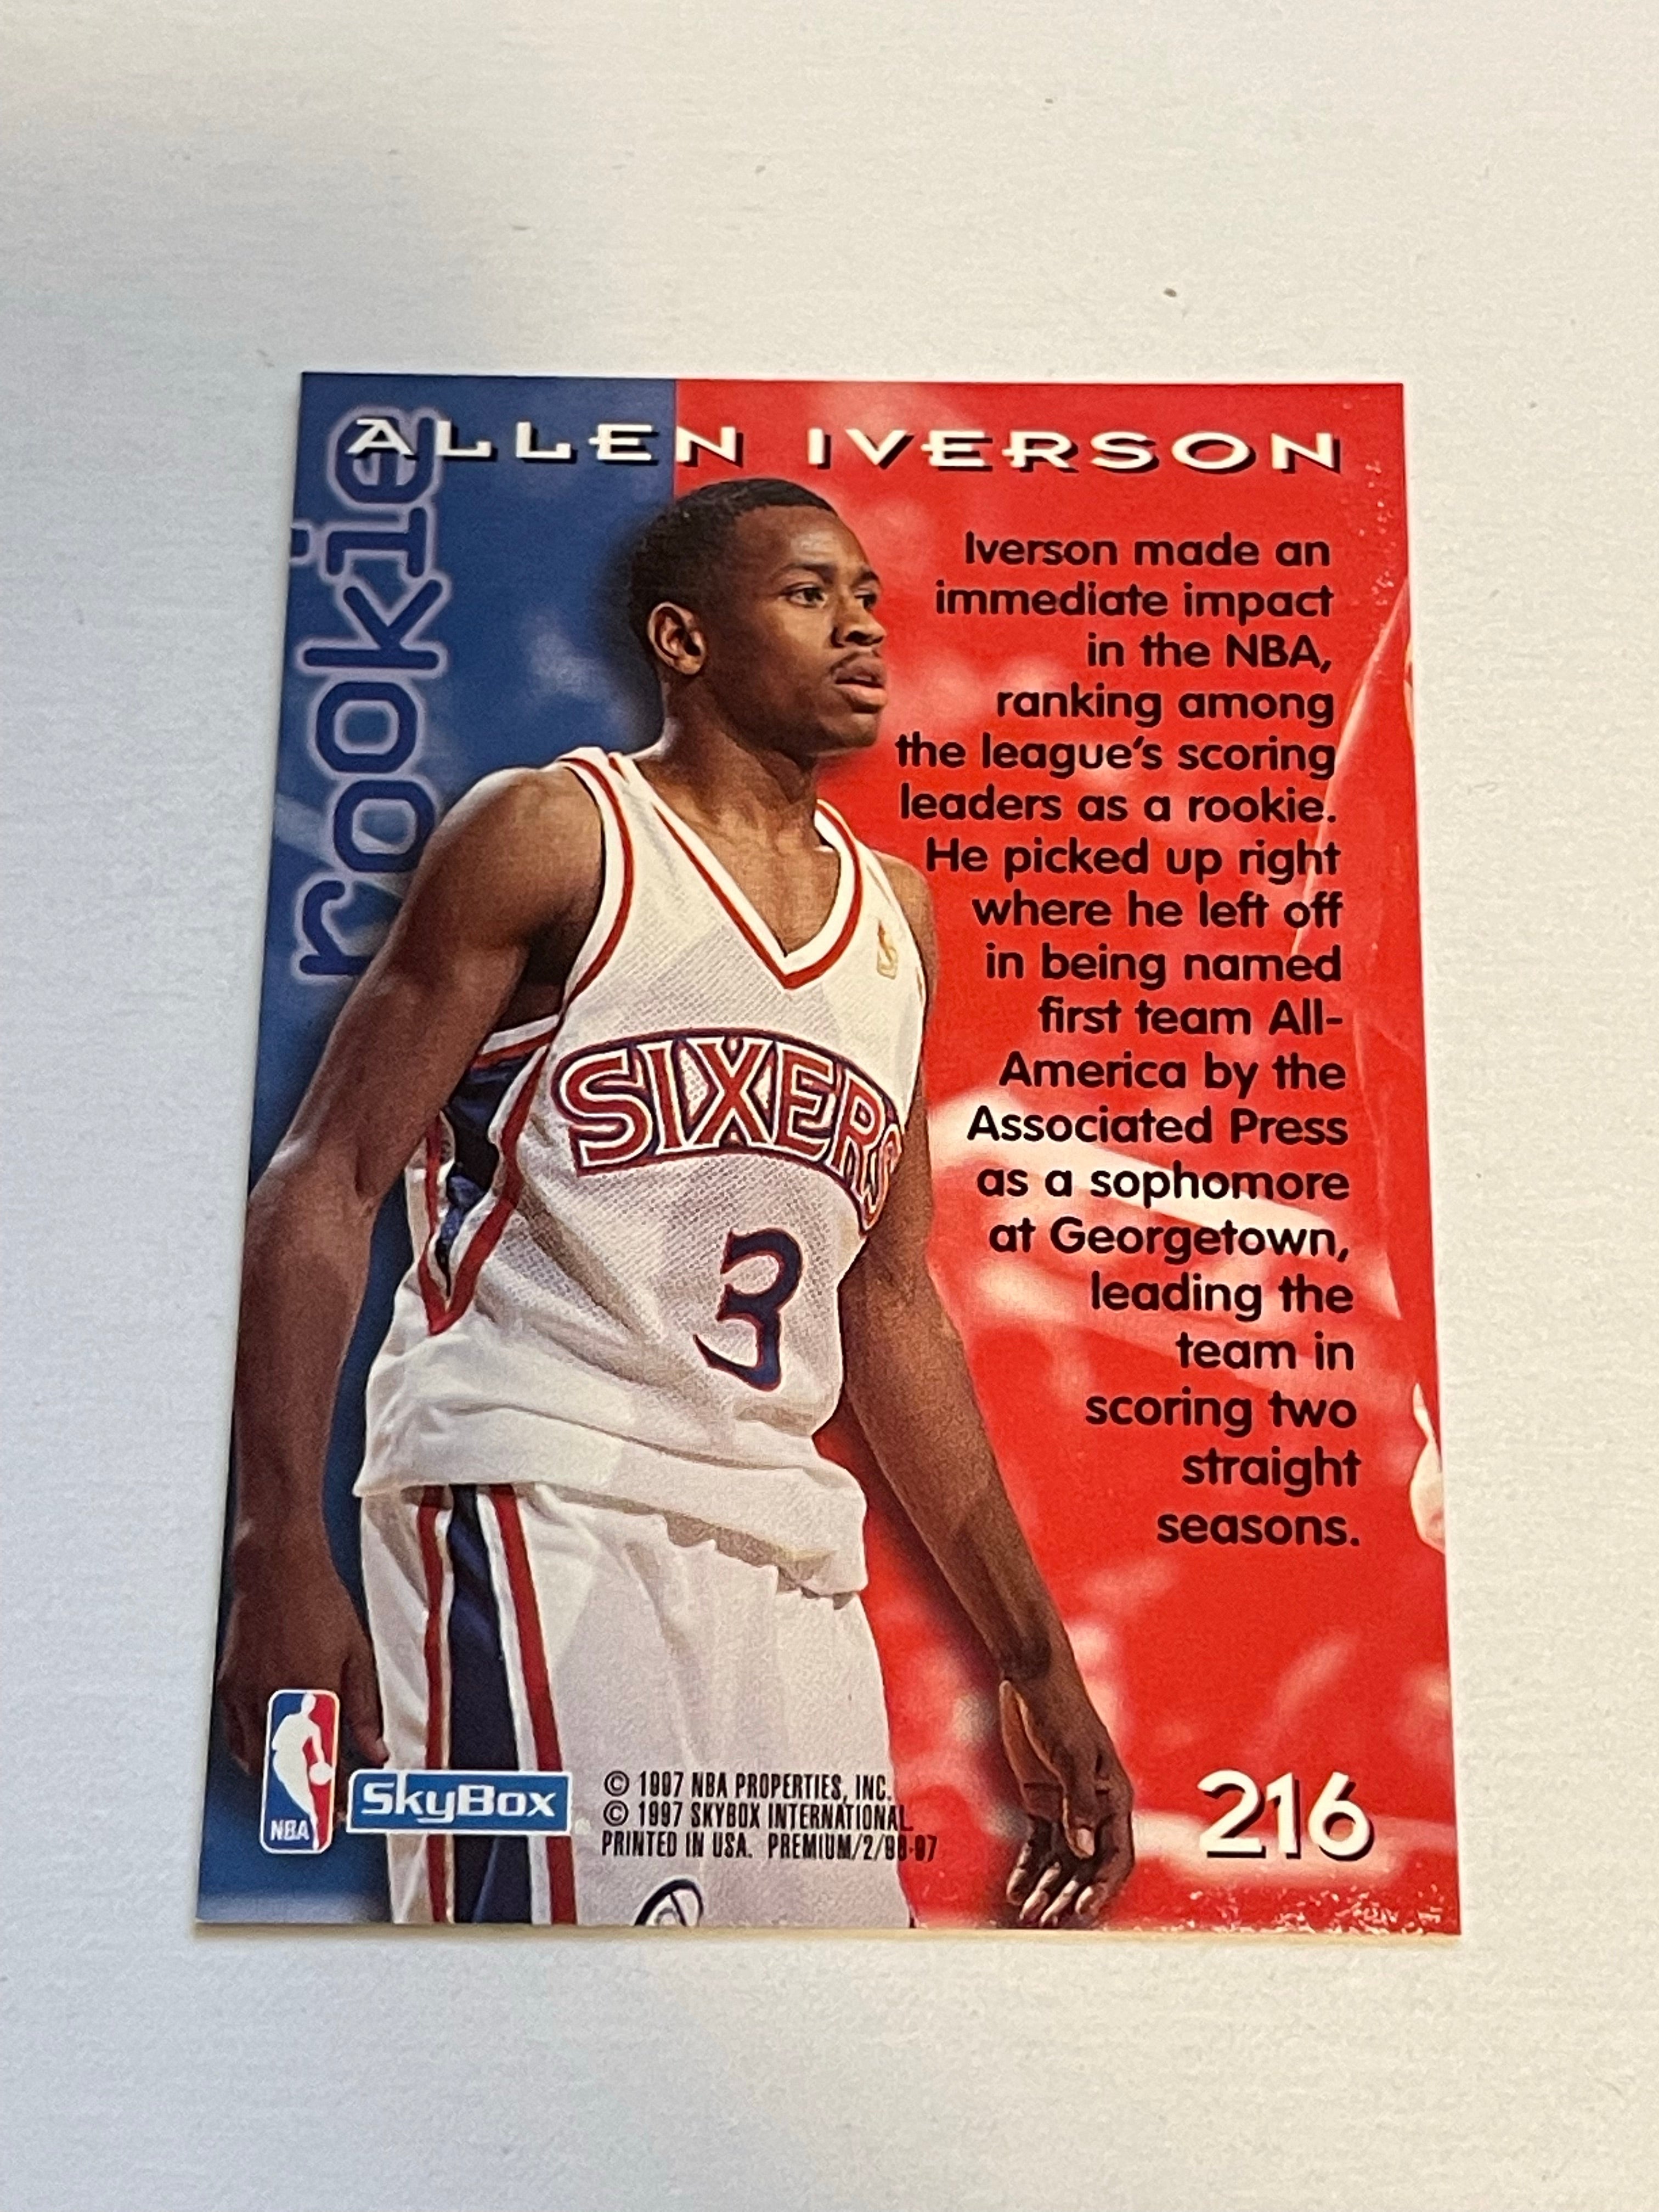 Allen Iverson skybox high grade basketball rookie card 1997